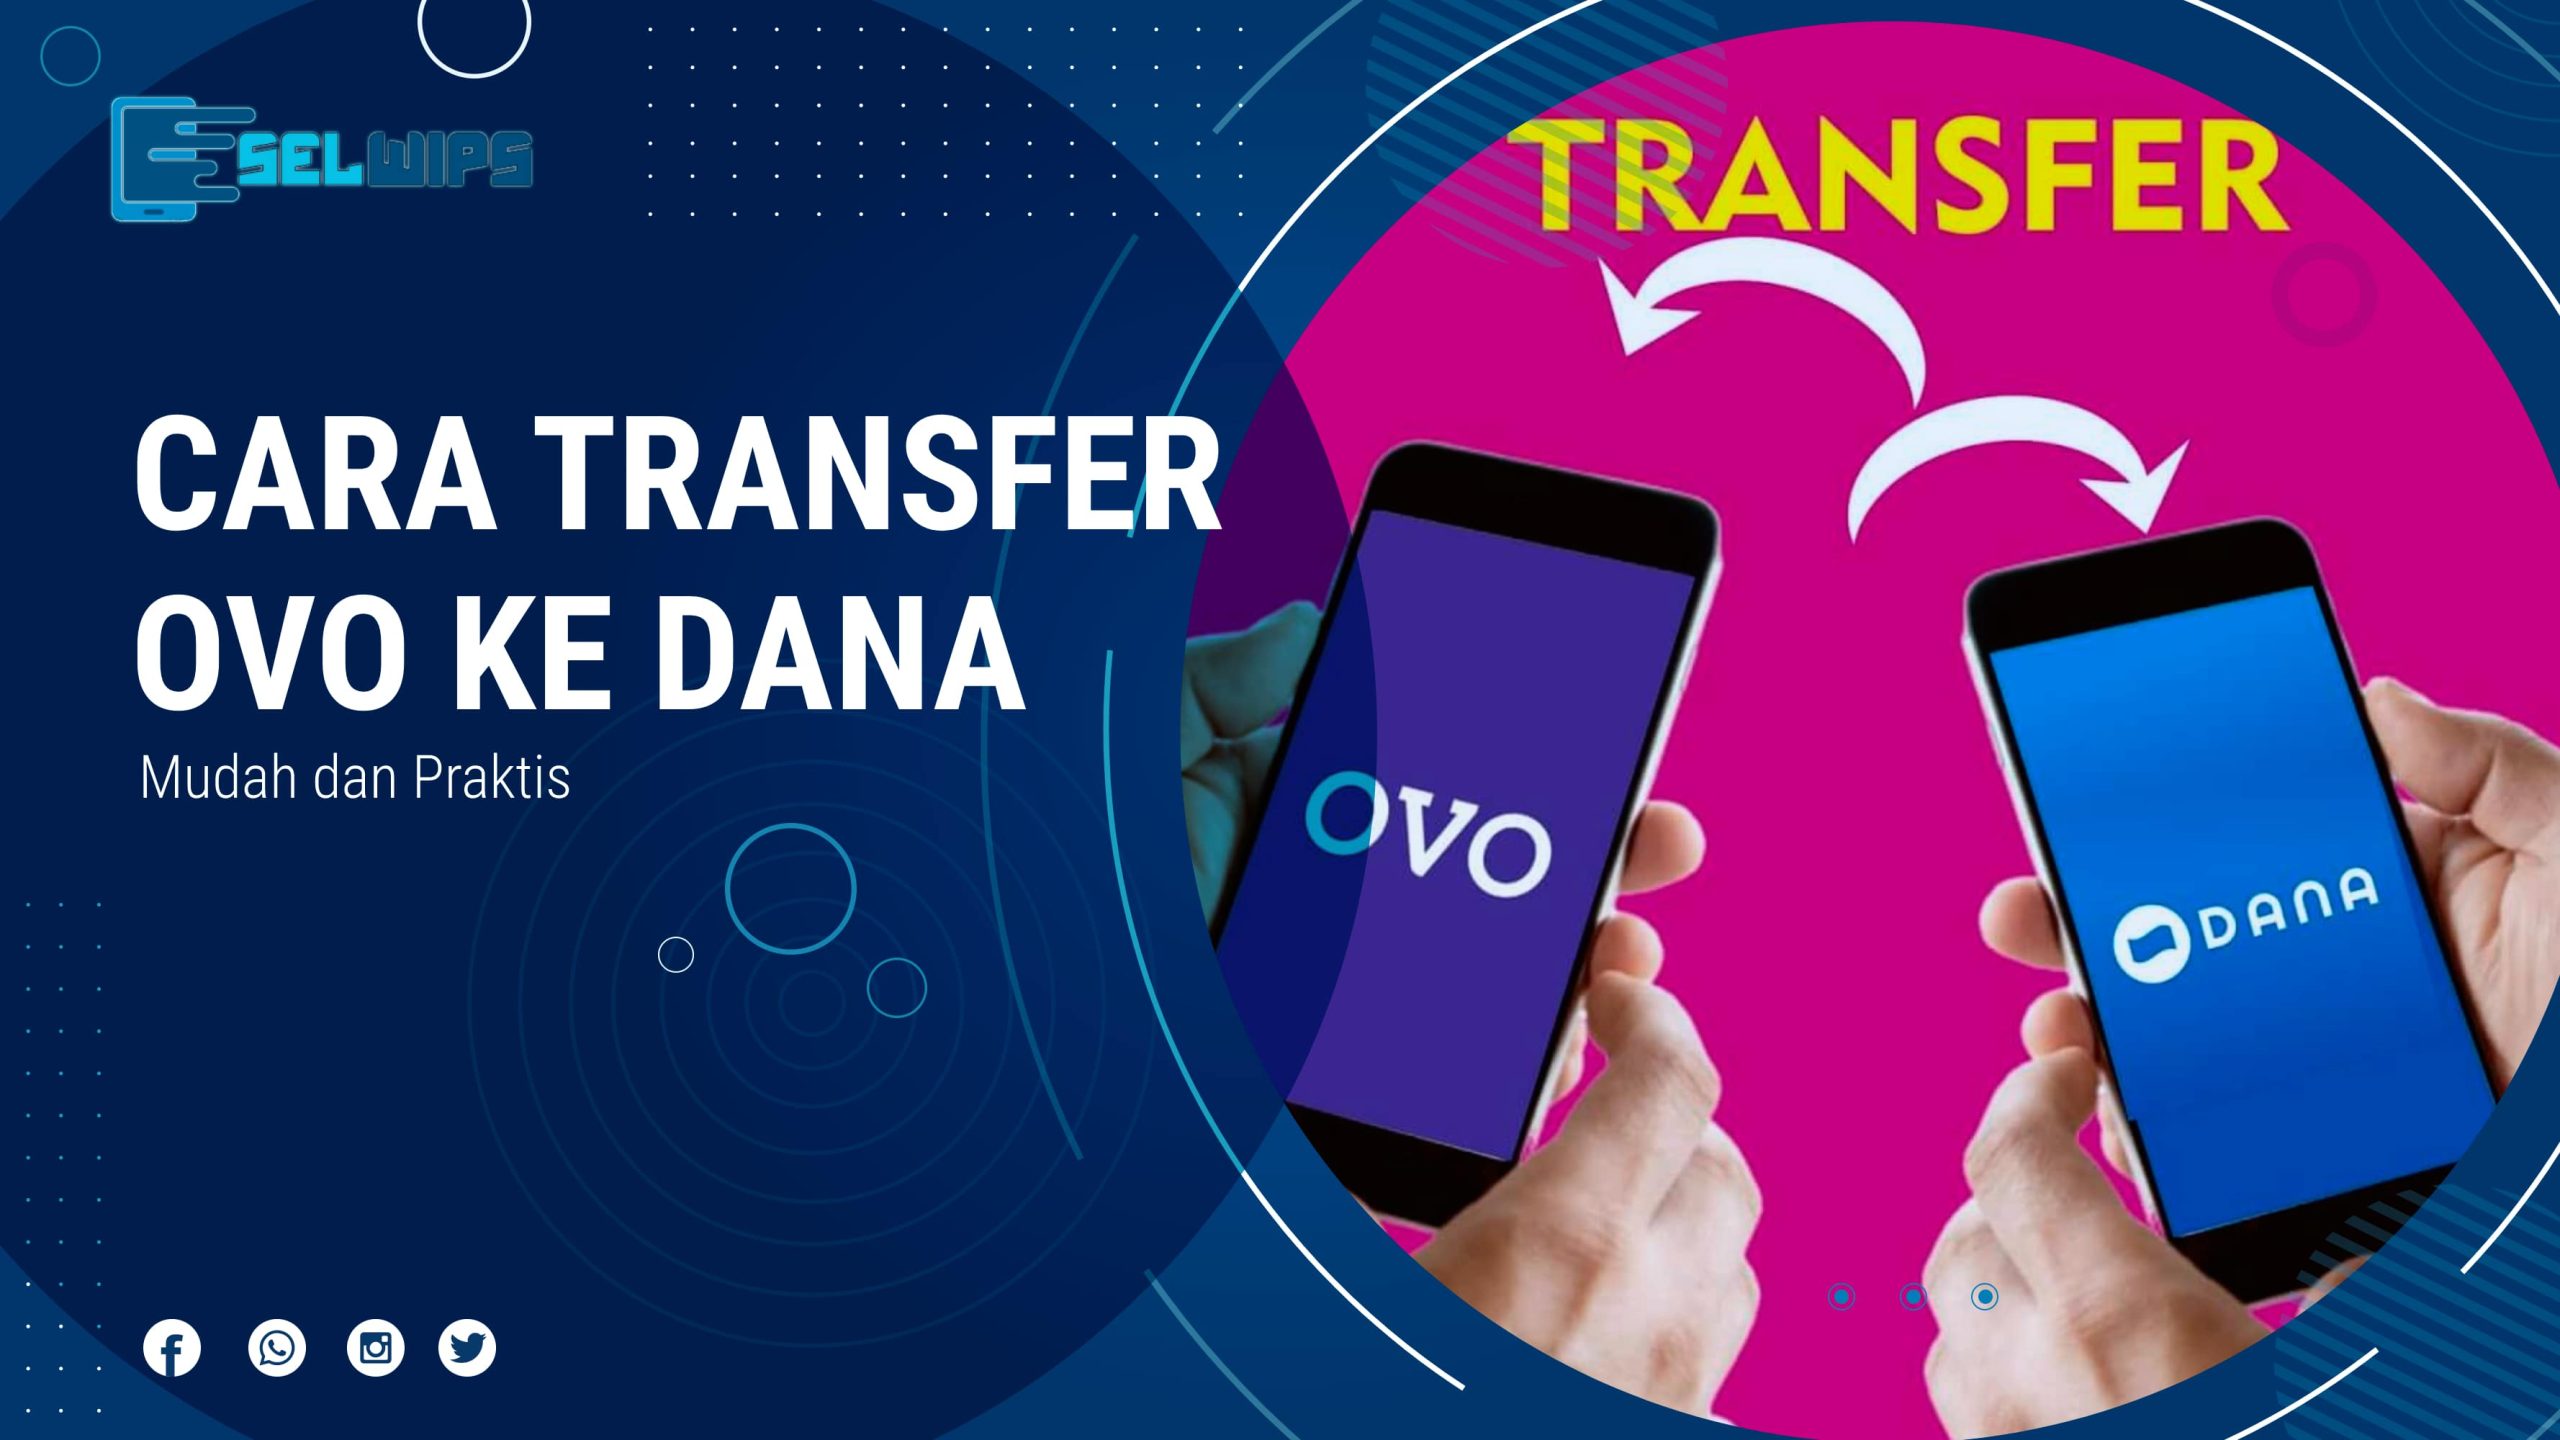 Cara Transfer OVO ke Dana, Mudah dan Praktis Selwips